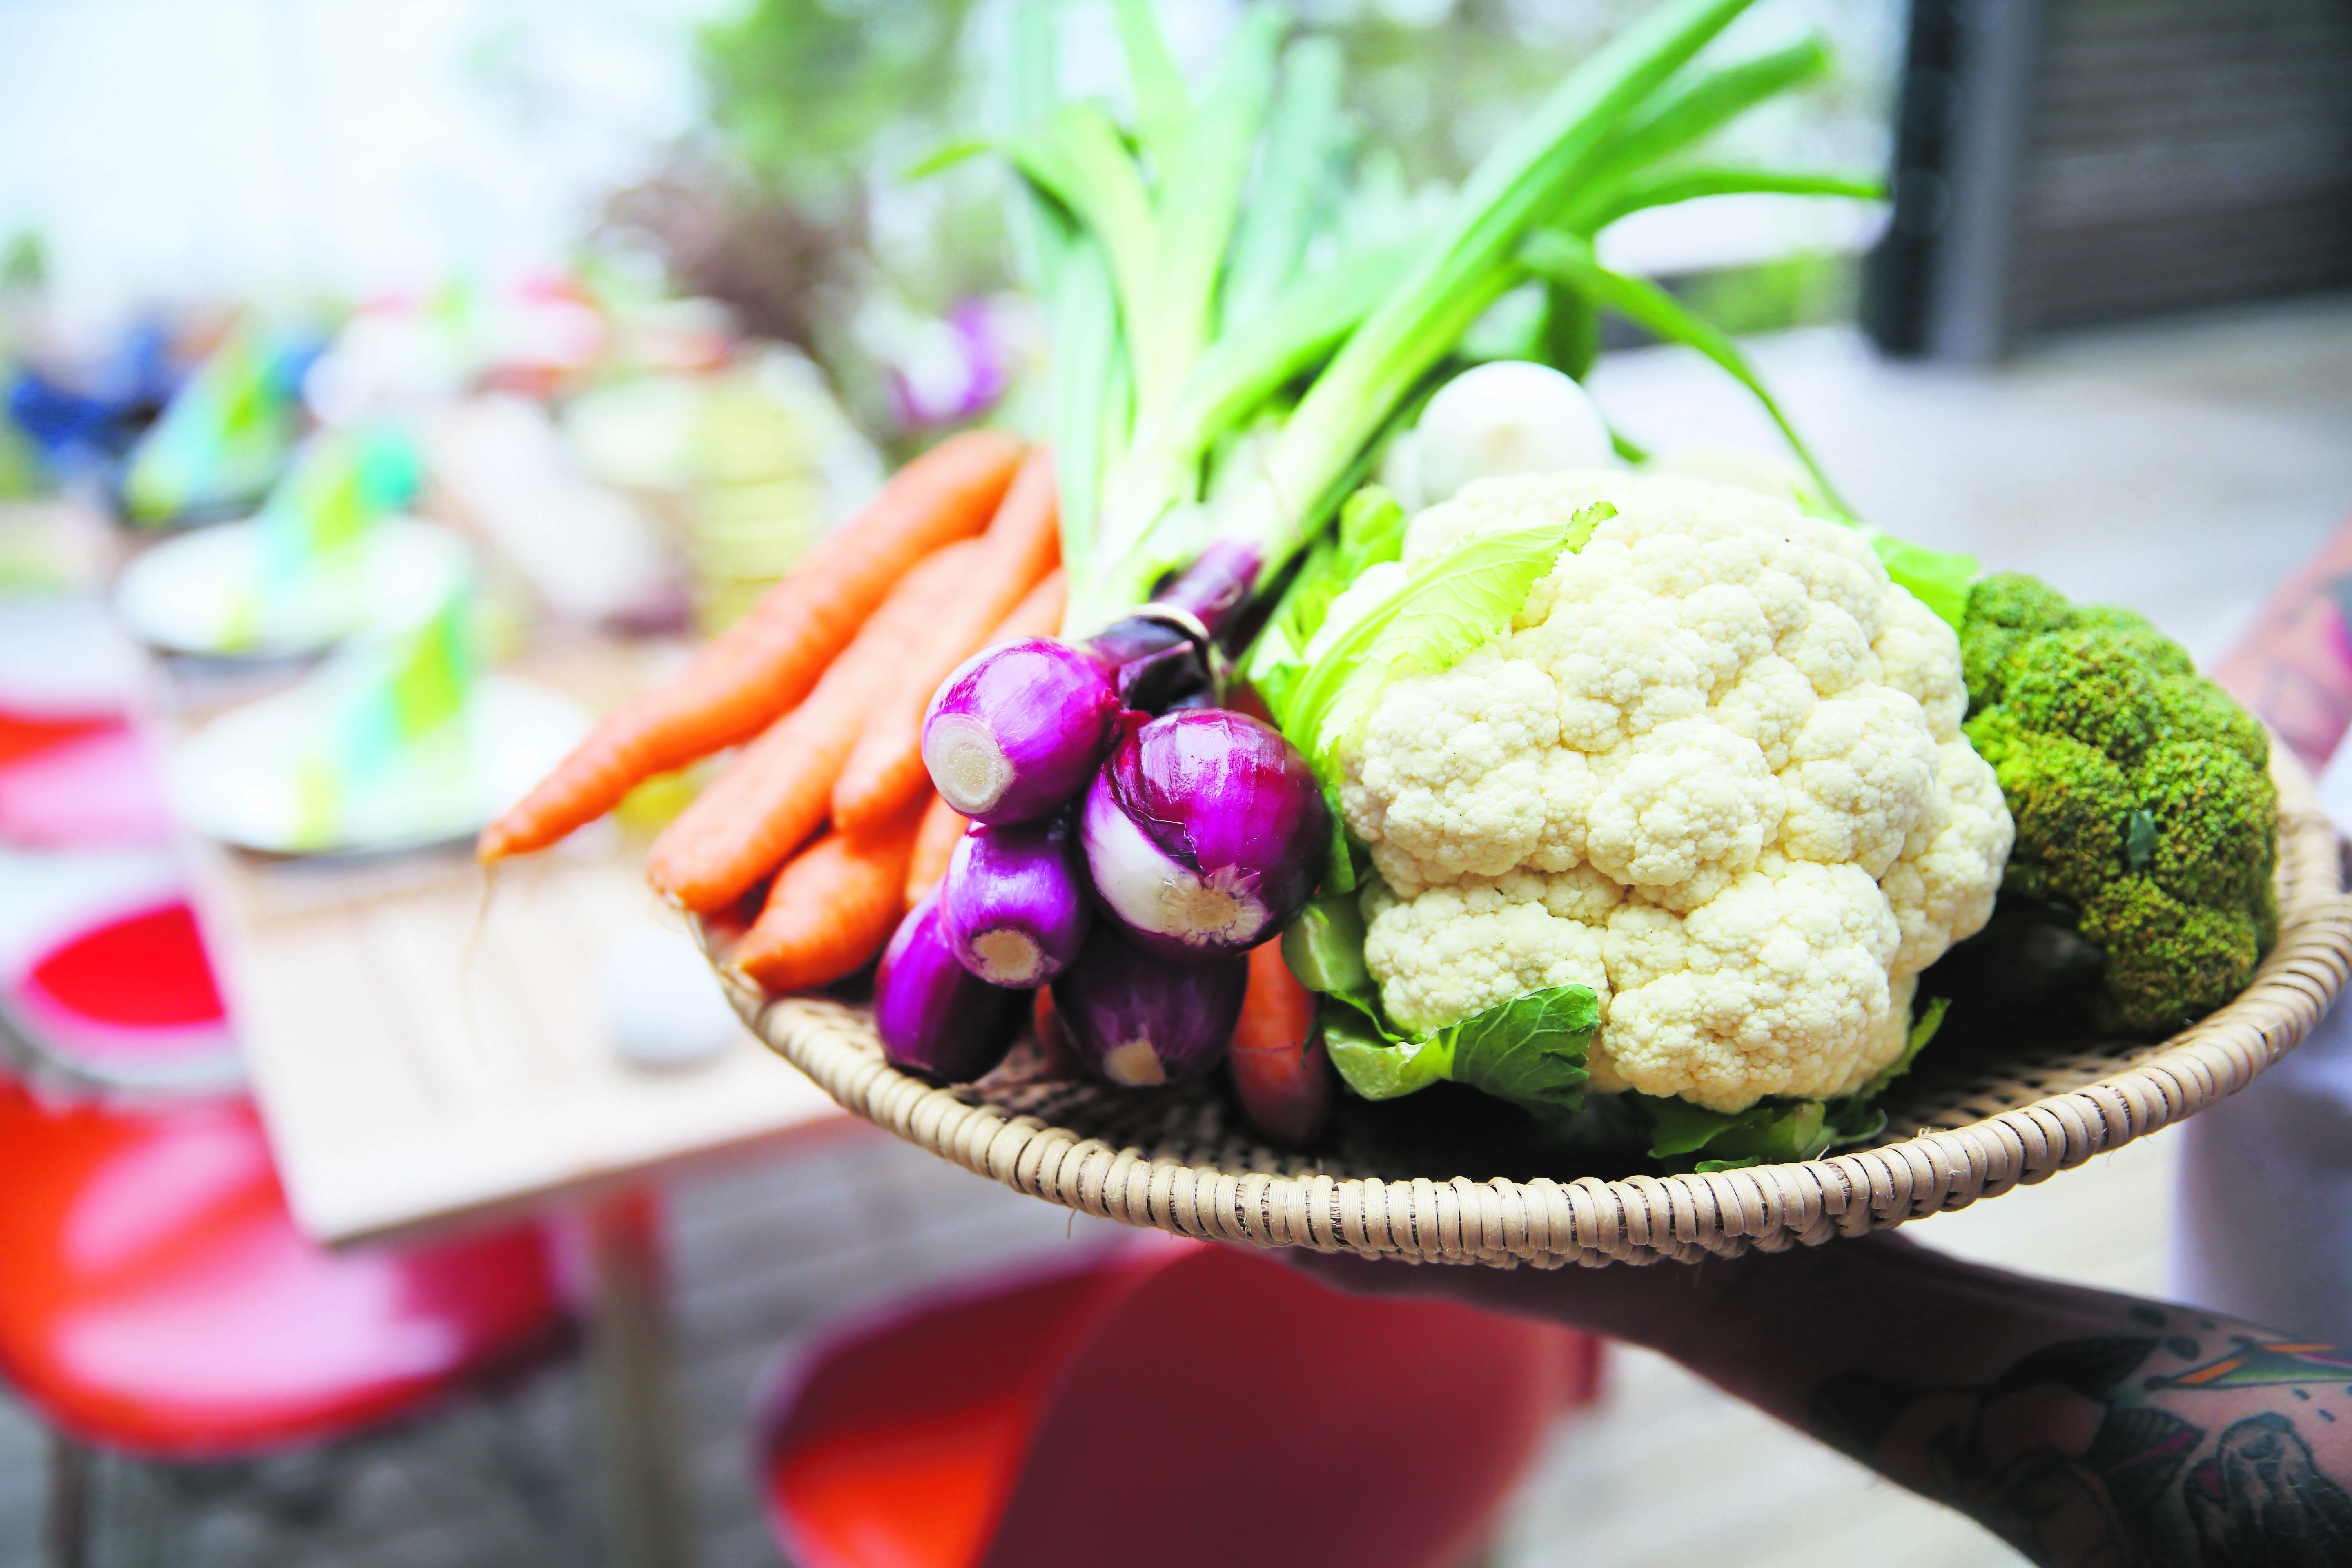 A basket full of fresh Finnish vegetables